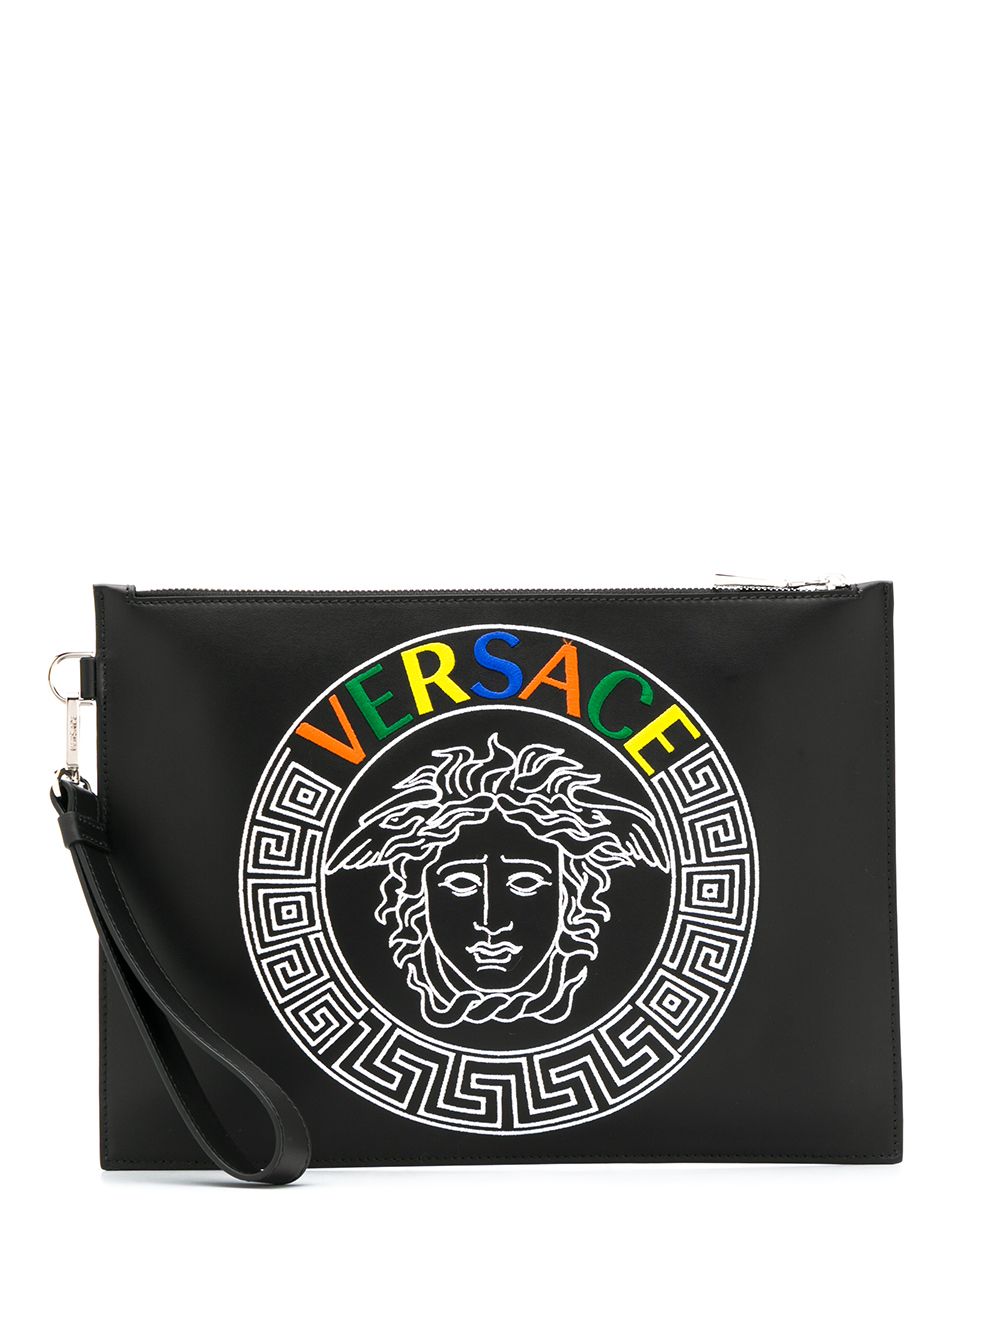 фото Versace клатч с принтом Medusa